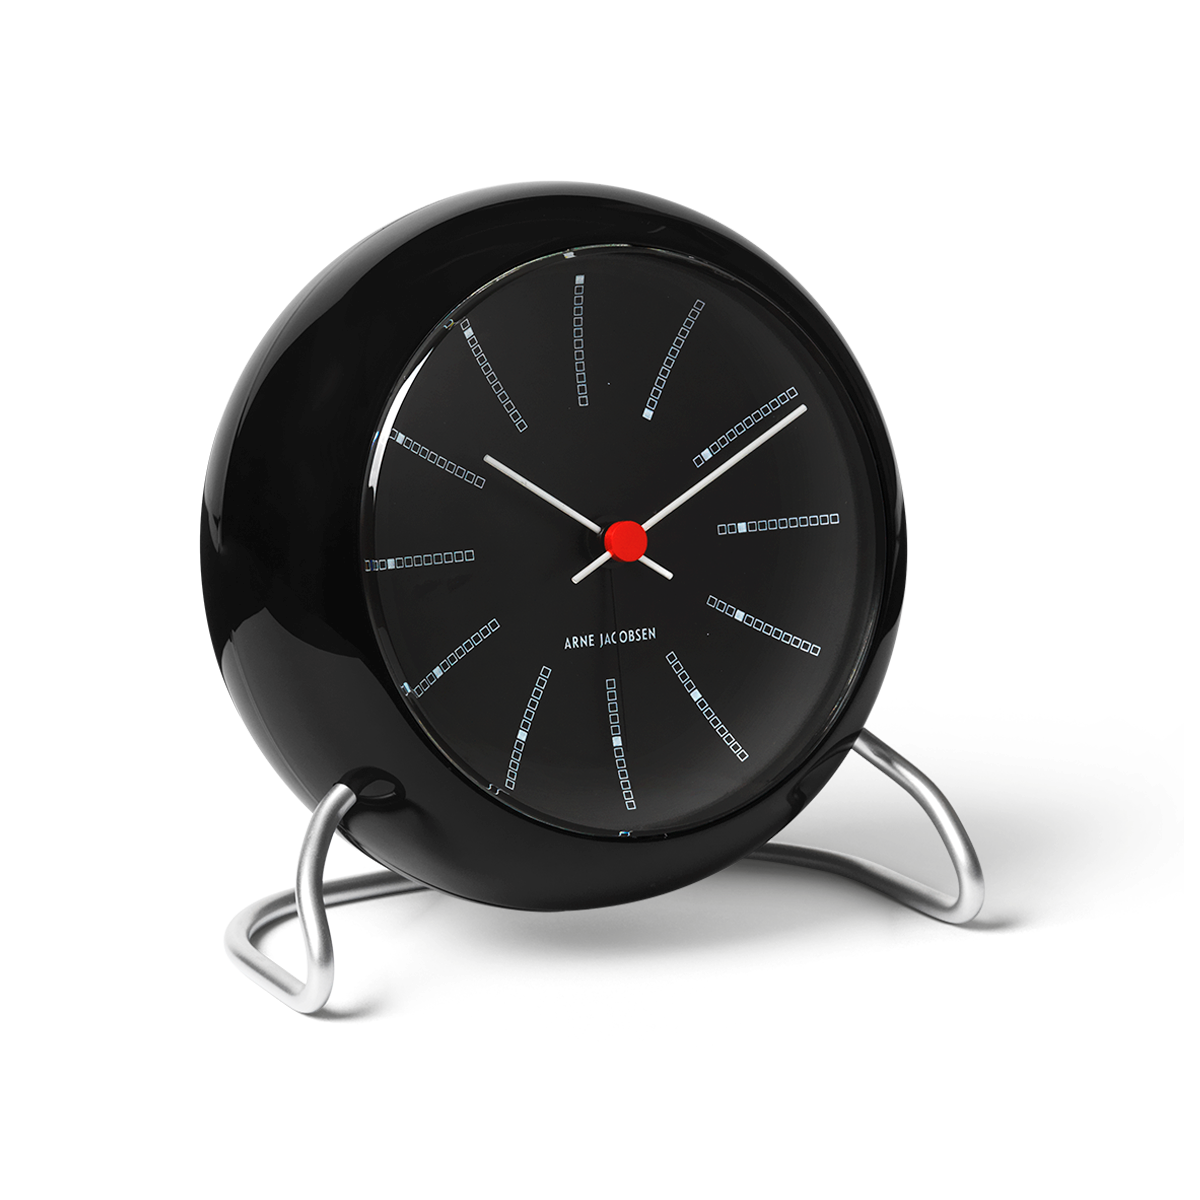 Arne Jacobsen Bankers Alarm Clock, Black